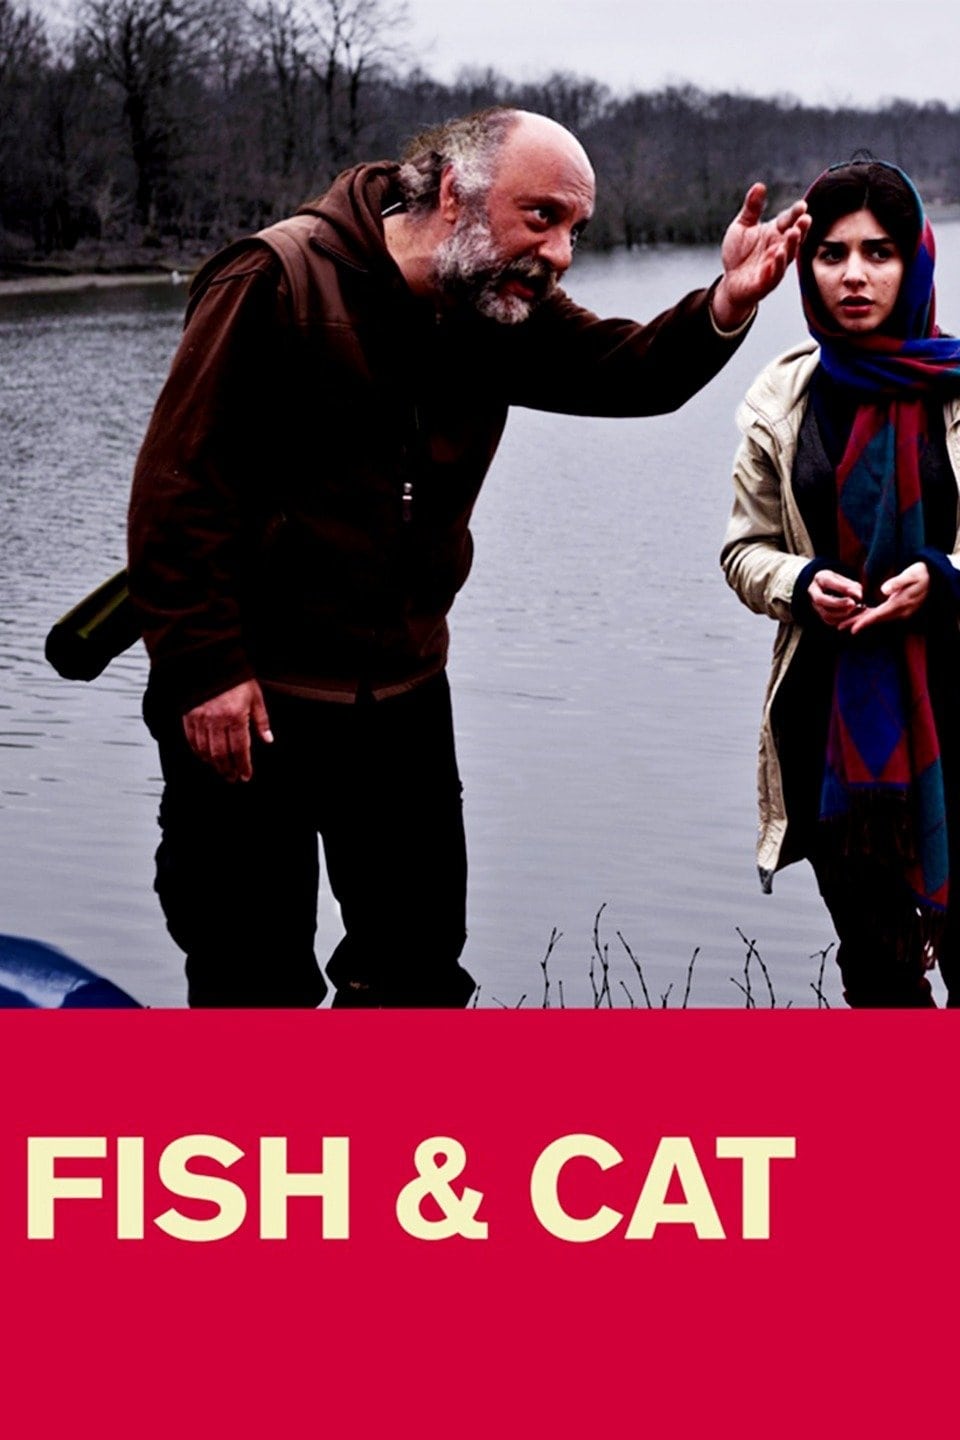 Fish & Cat (2013)